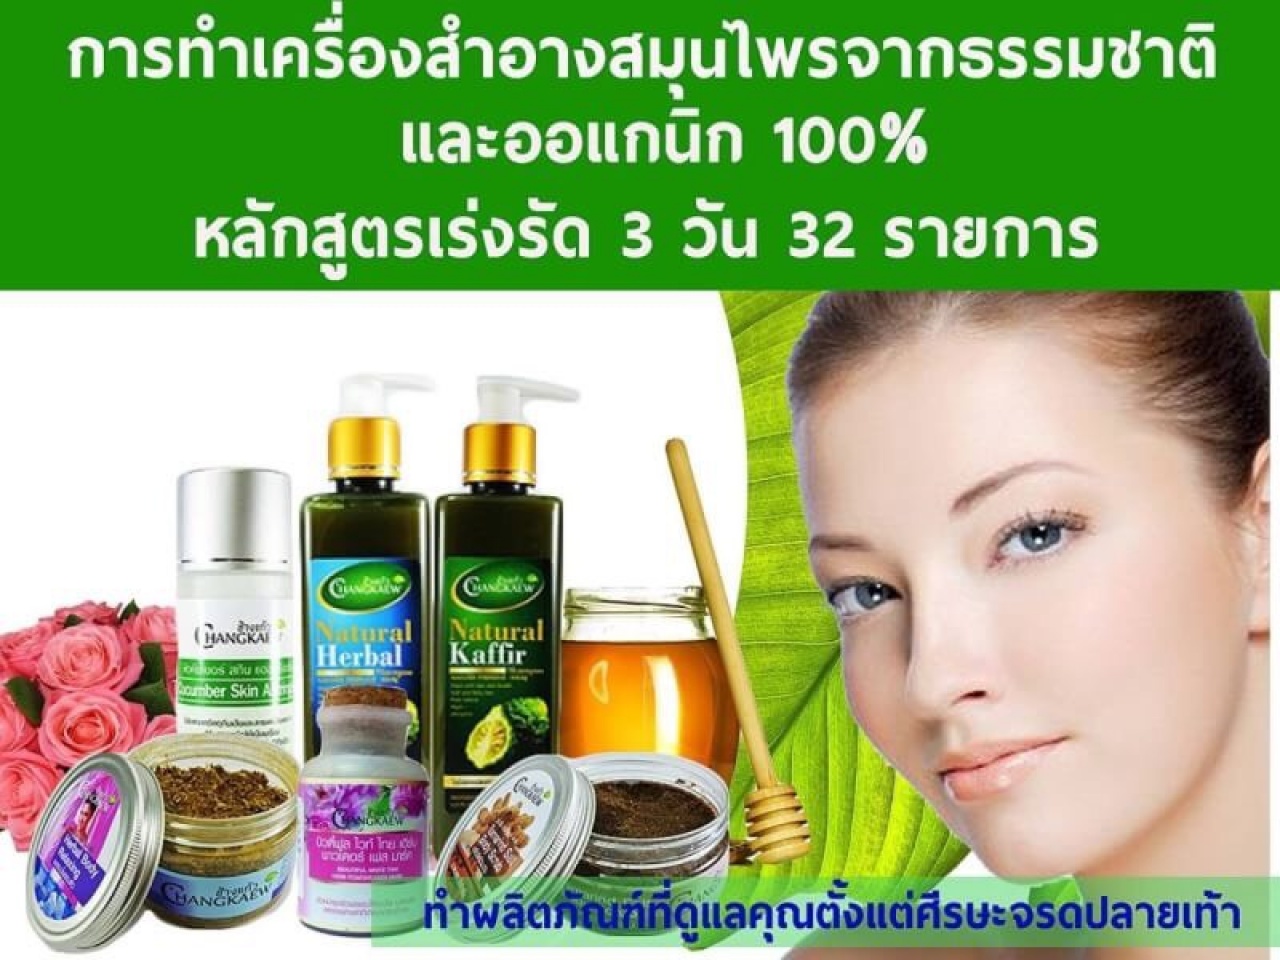 หลักสูตรการแปรรูปสมุนไพรไทยเป็นผลิตภัณฑ์เพื่อความงามและสปาไทยประยุกต์ ธรรมชาติ 100 %